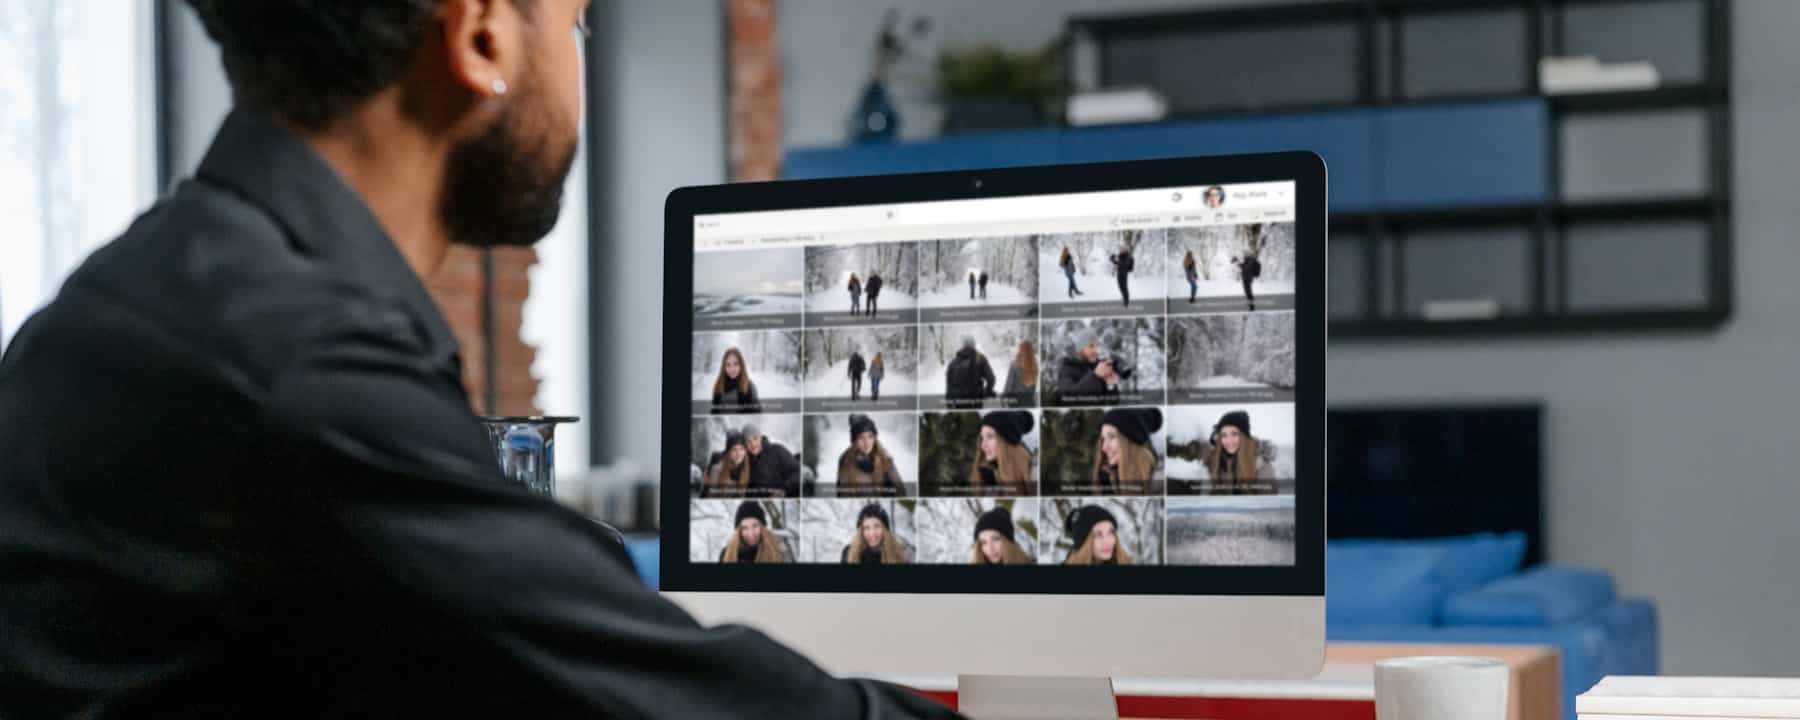 Mitarbeiter verwaltet Fotos auf Mac - Symbolbild Fotos einsammeln von Gruppen